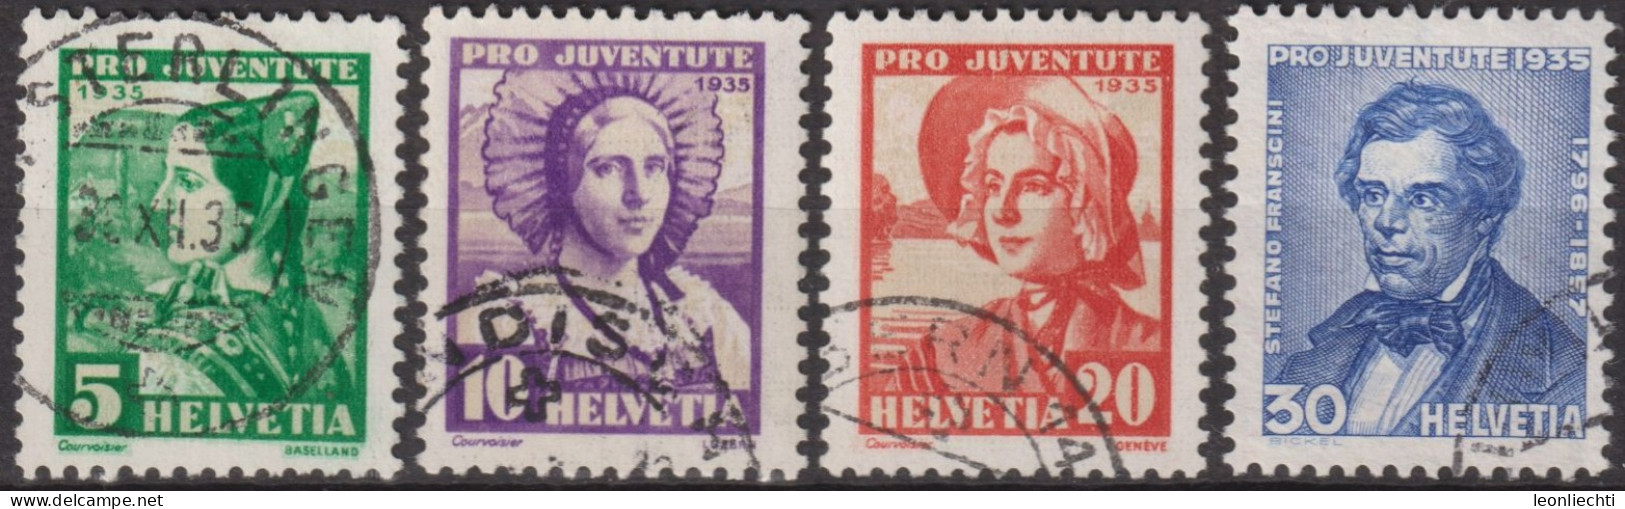 1935 Schweiz / Pro Juventute ° Zum:CH J73-J76, Mi:CH 287-290, Yt:CH 282-285, Frauentrachten, Stefano Franscini - Gebraucht